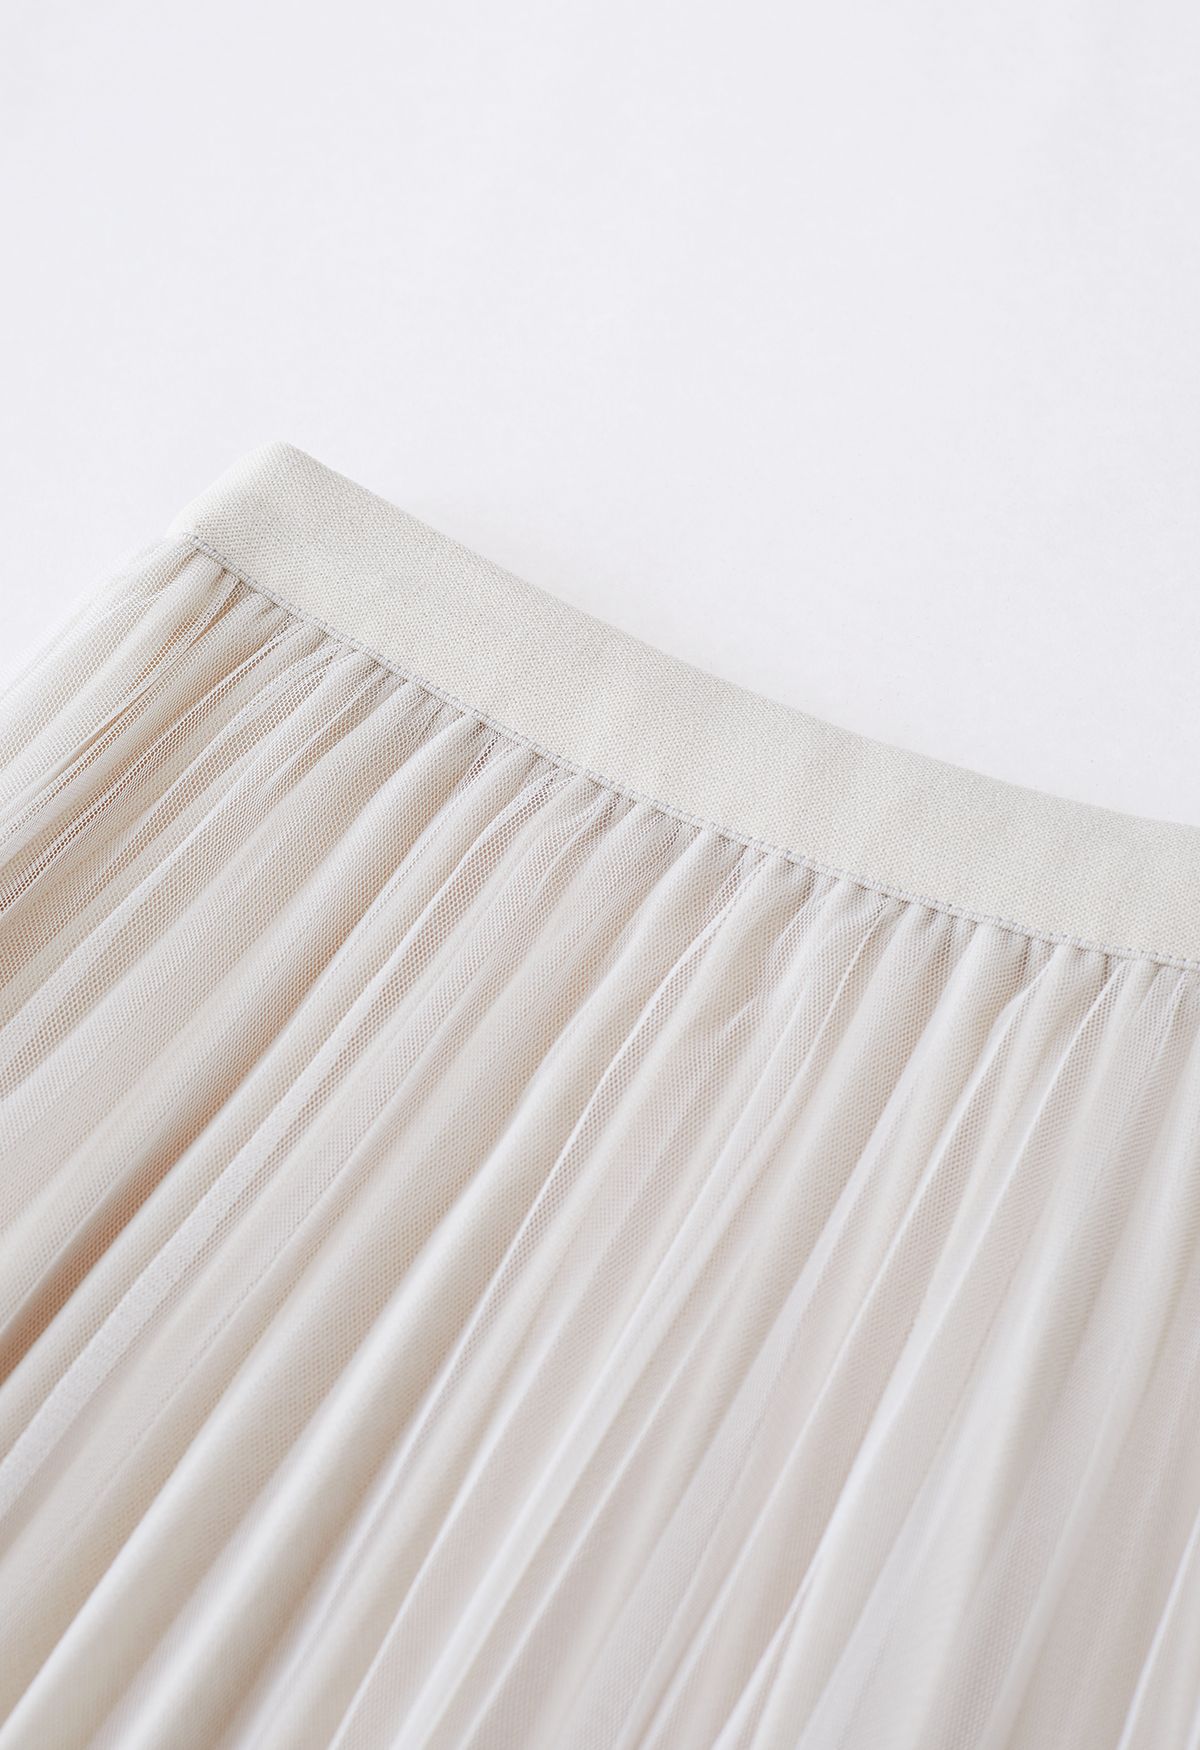 Falda midi de malla de doble capa con dobladillo de encaje en color crema